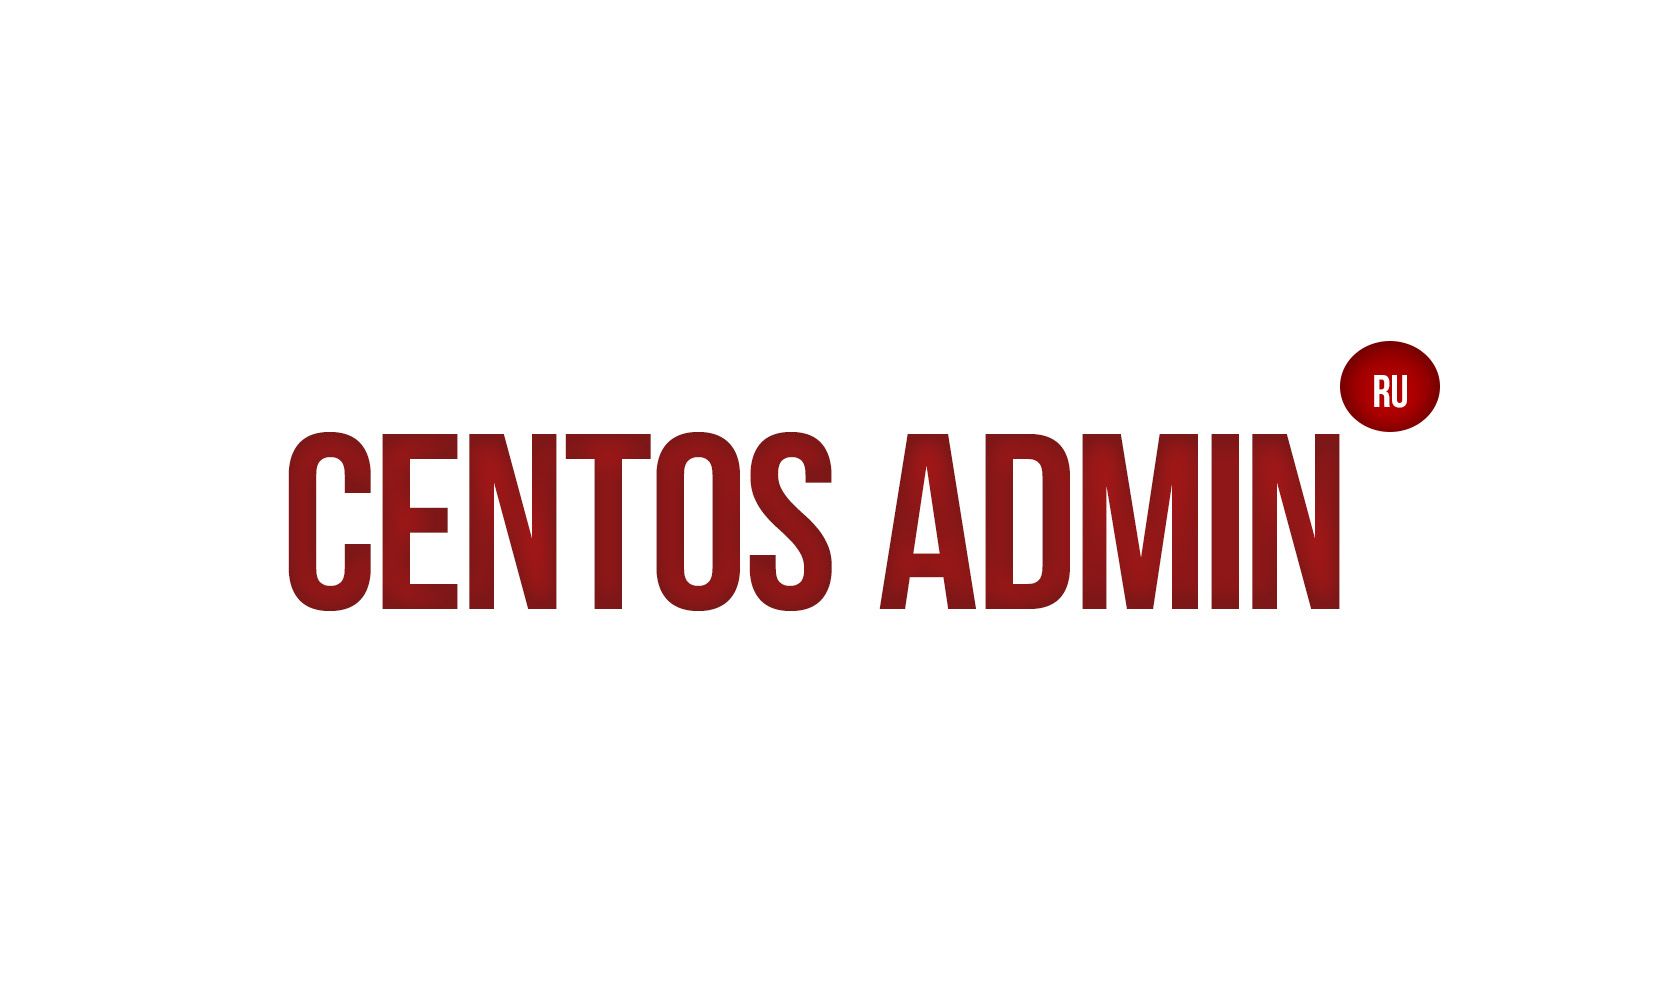 Логотип для компании Centos-admin.ru - дизайнер optimuzzy